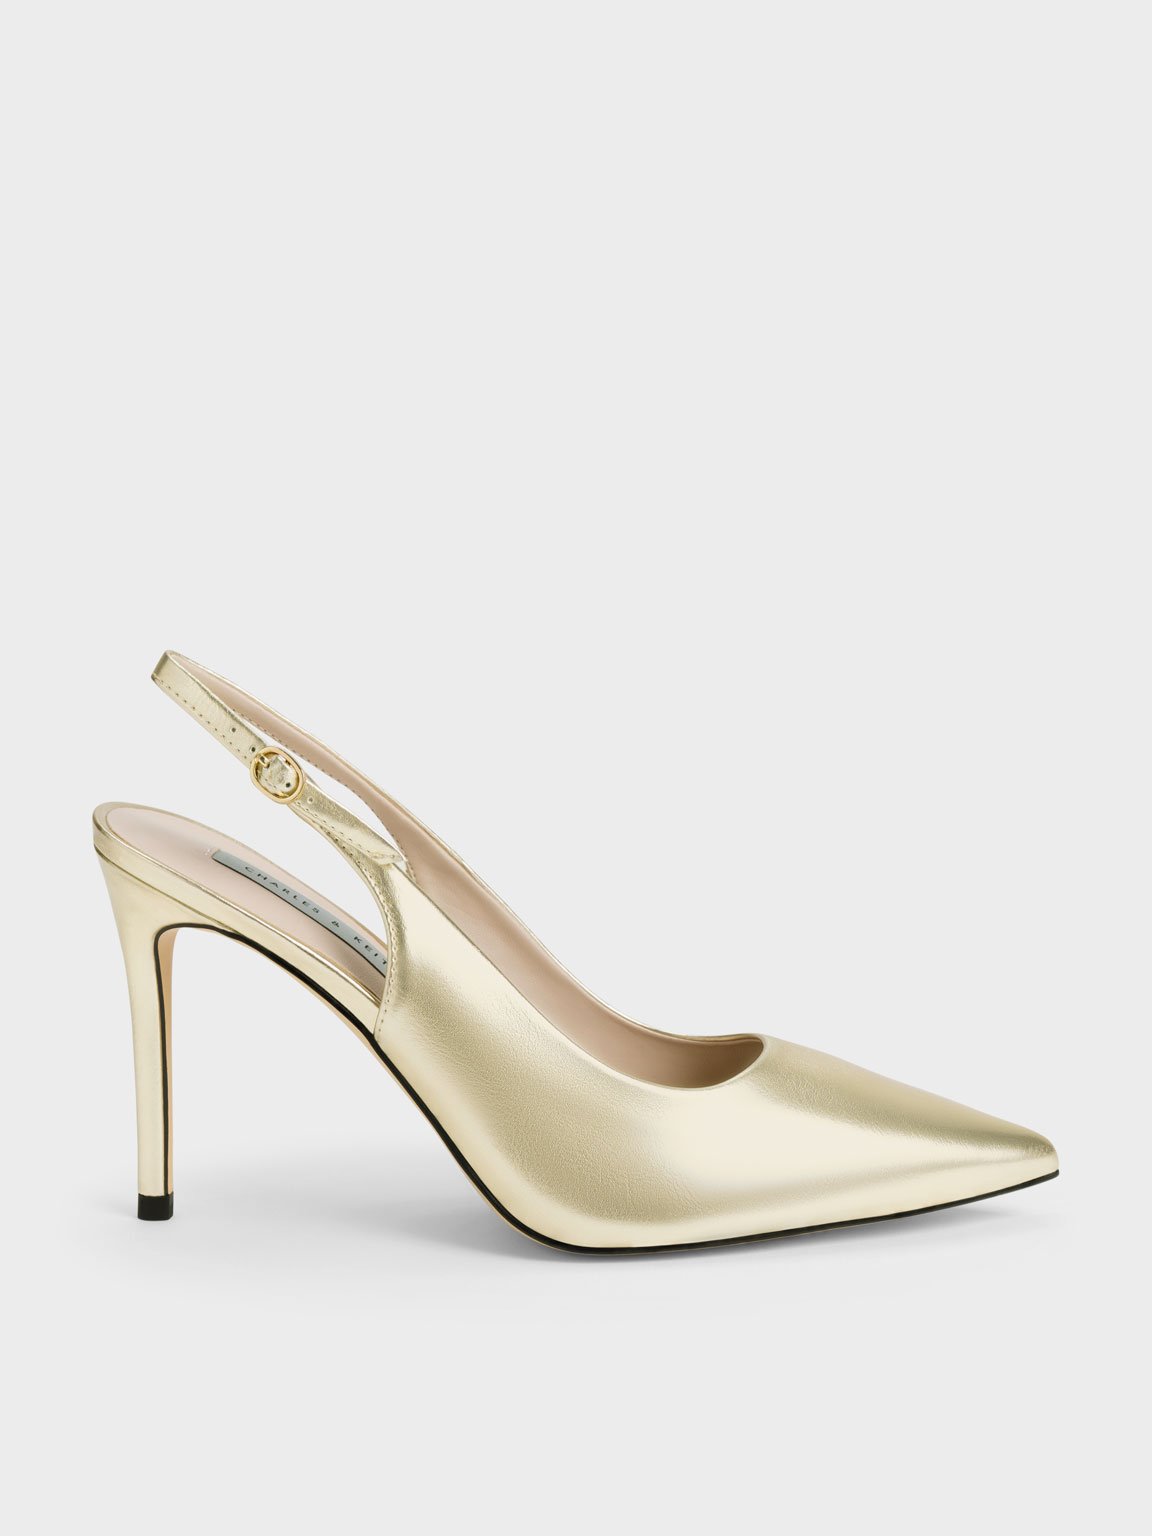 Gold Heels | Gold Block Heels | Karen Millen UK